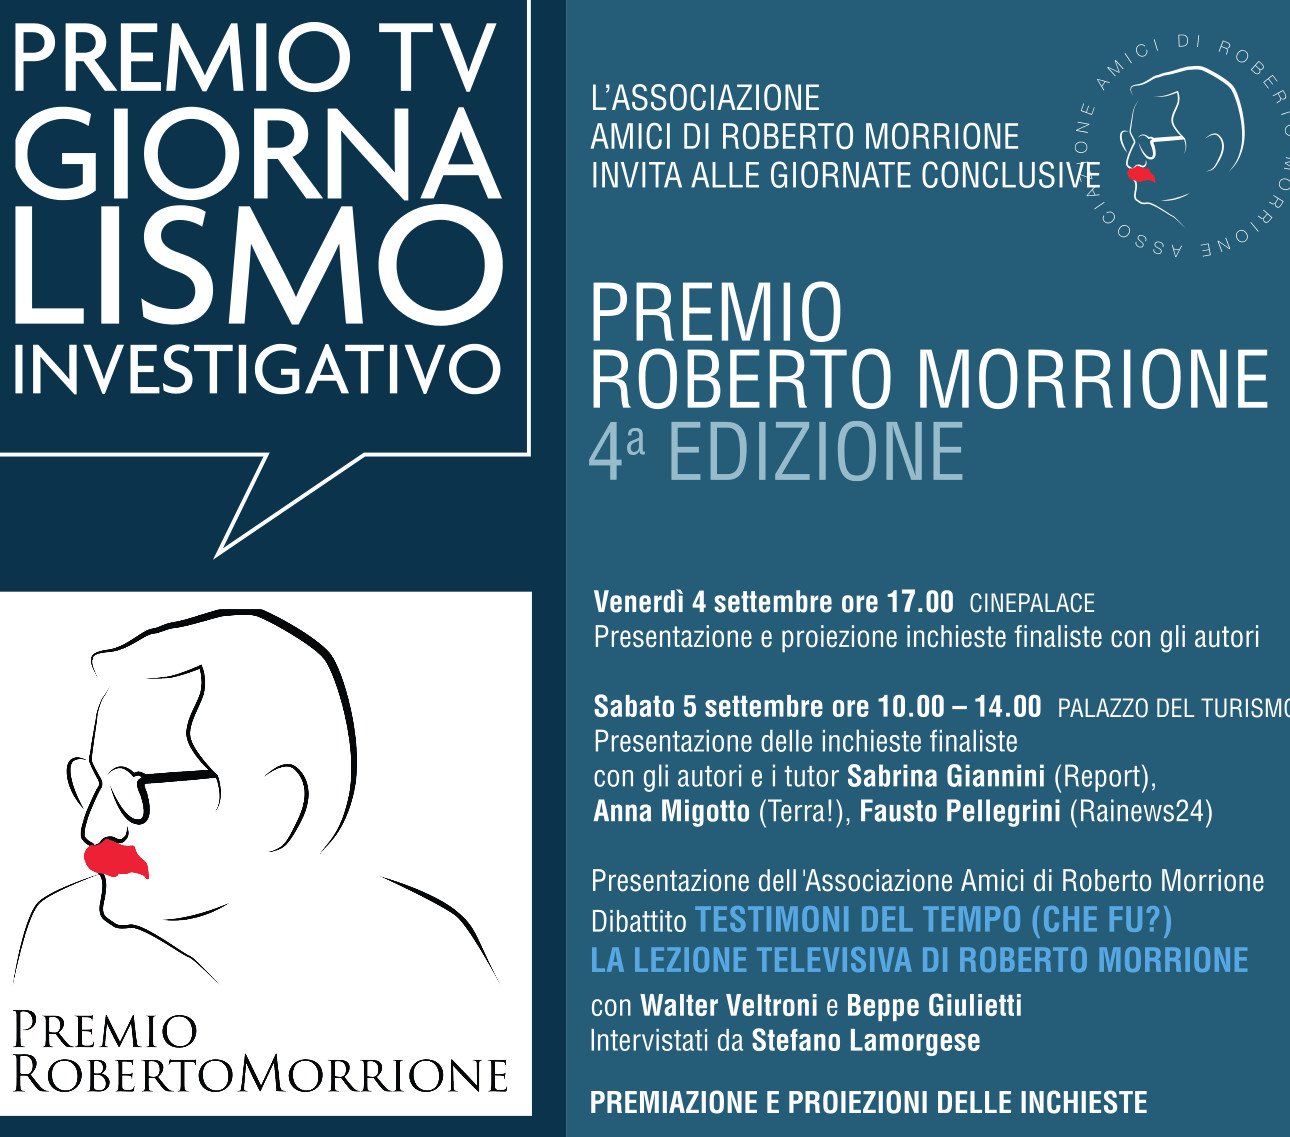 Il premio Roberto Morrionealle “Giornate del Giornalismo” di Riccione